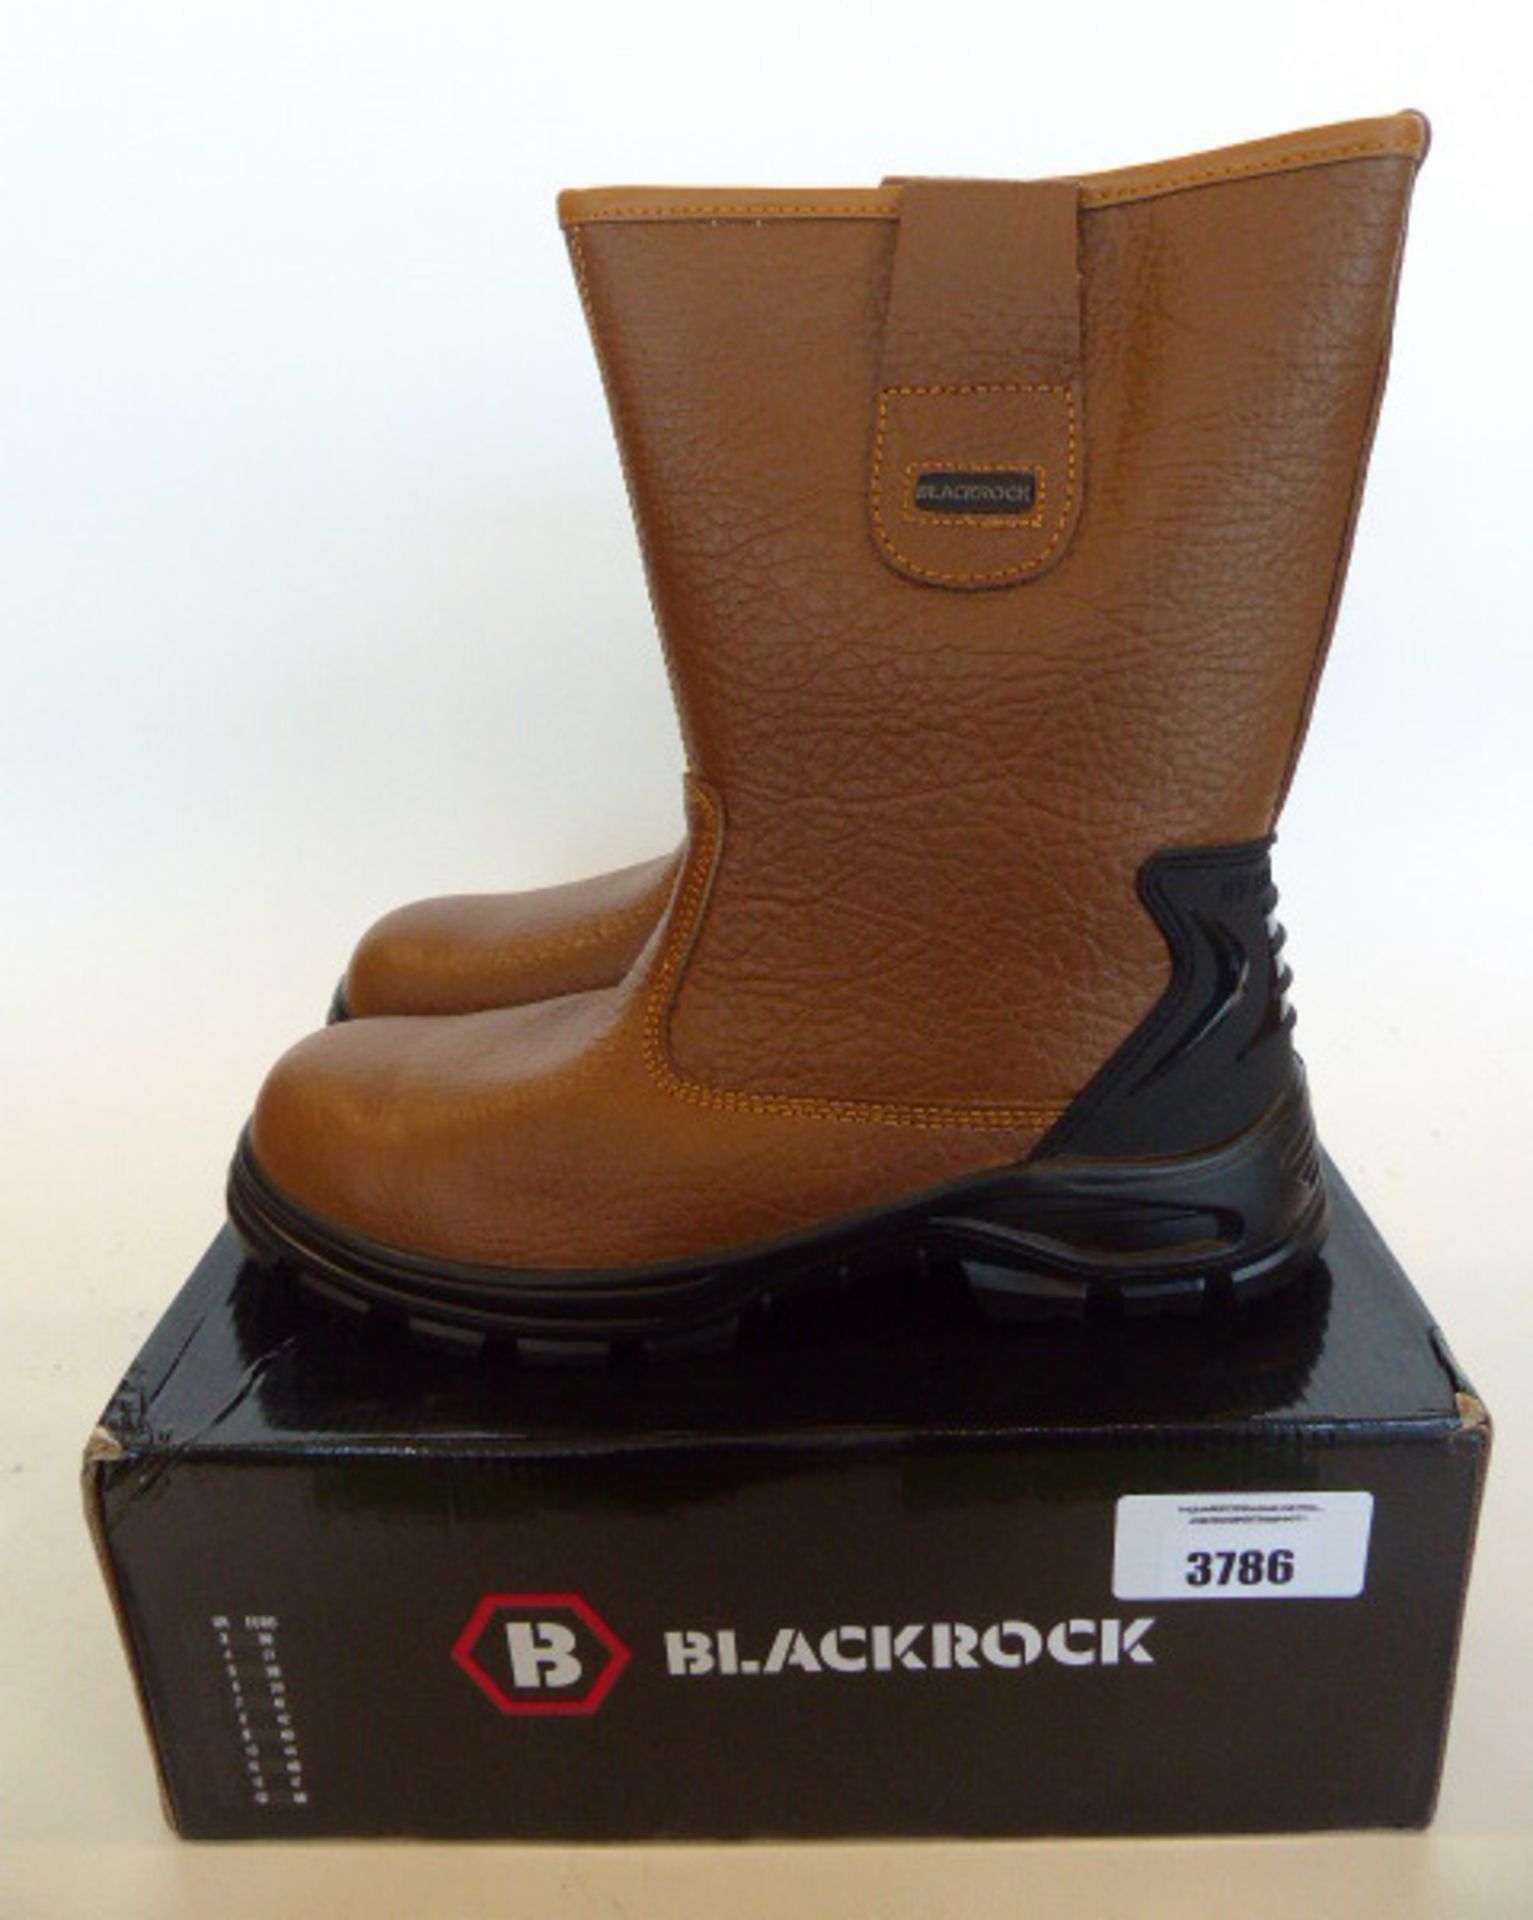 BlackRock Fur Lined Rigger safety boots size 11